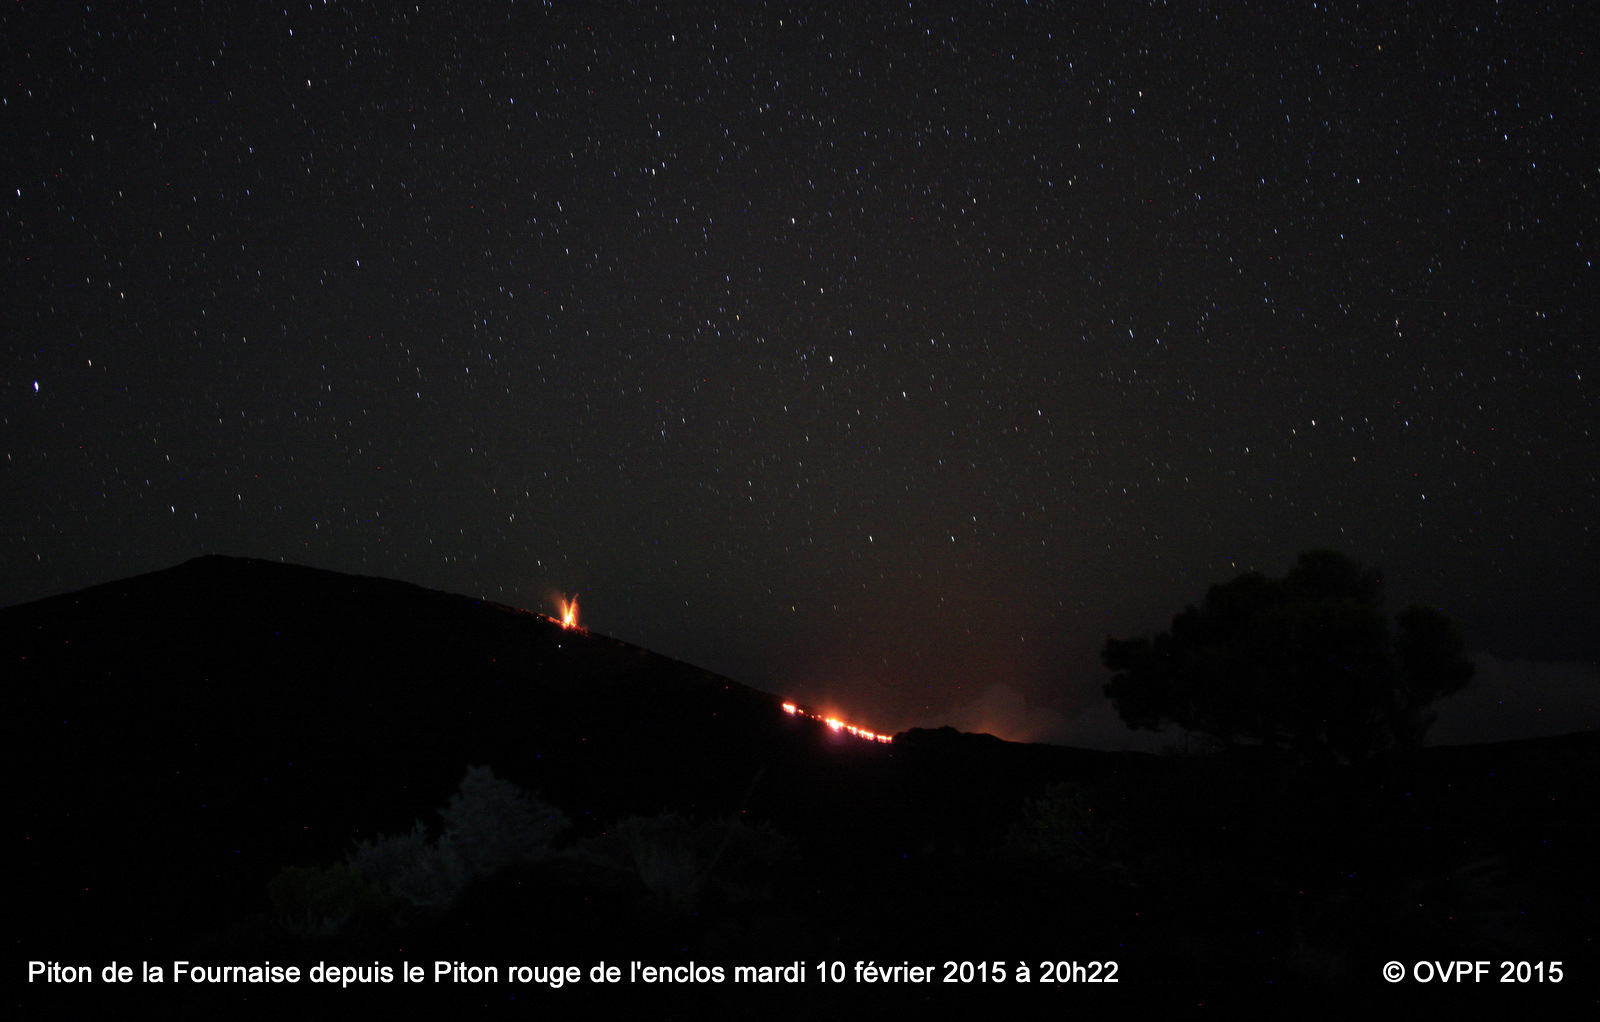 Piton de La Fournaise - l'éruption et la lueur de la coulée, vues depuis Piton rouge le 10.02.2015 / 20h22 - photo OVPF